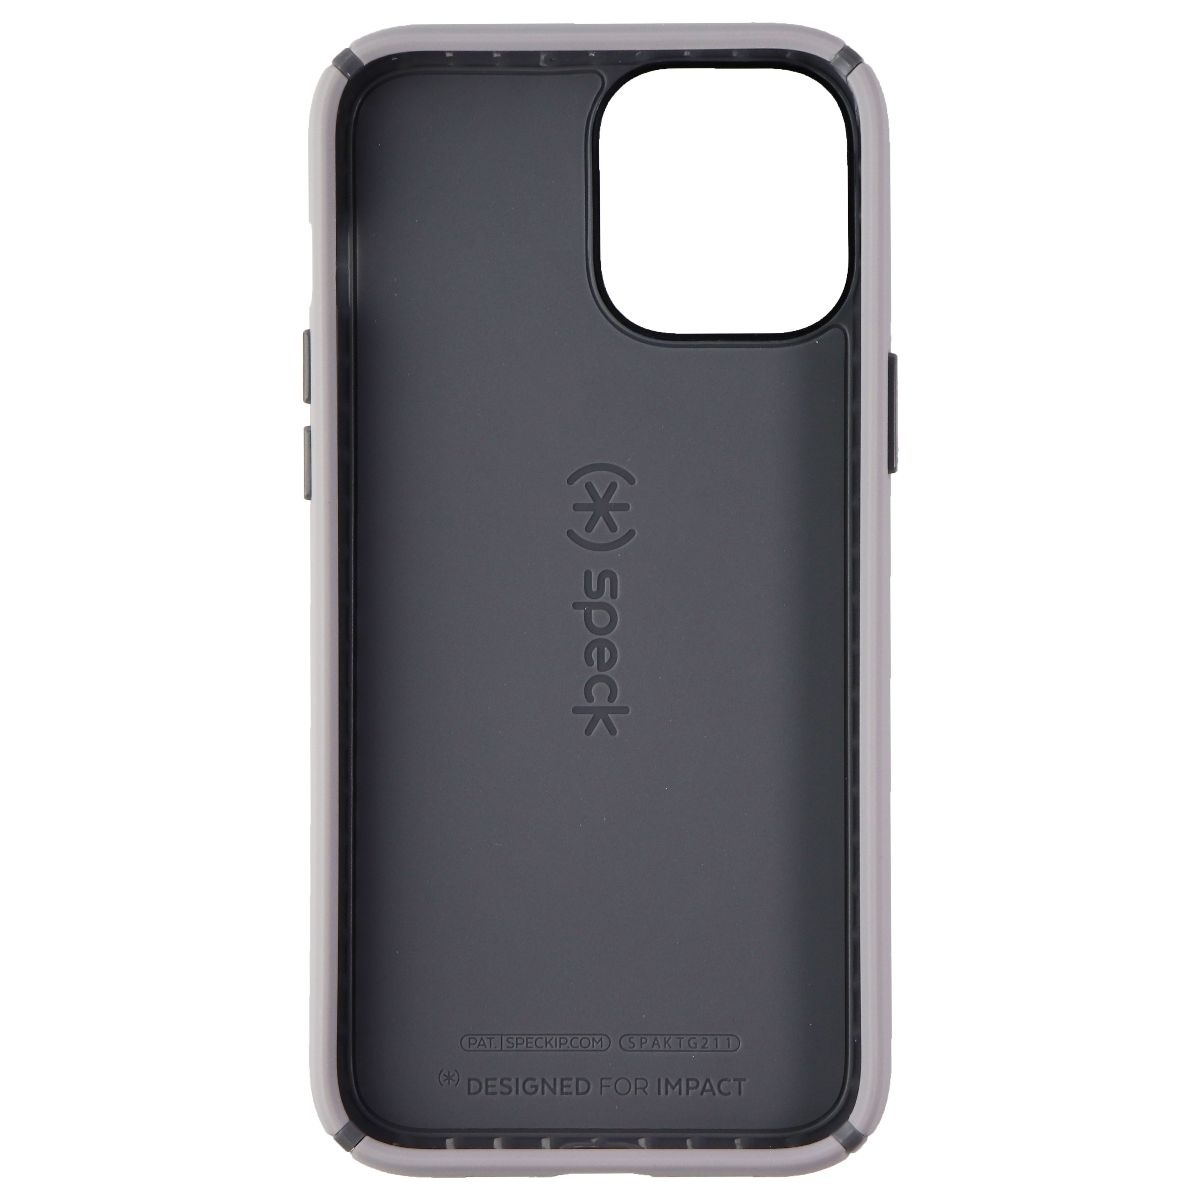 Speck Presidio2 PRO Series Case For Apple IPhone 12 Pro Max - Gray/White